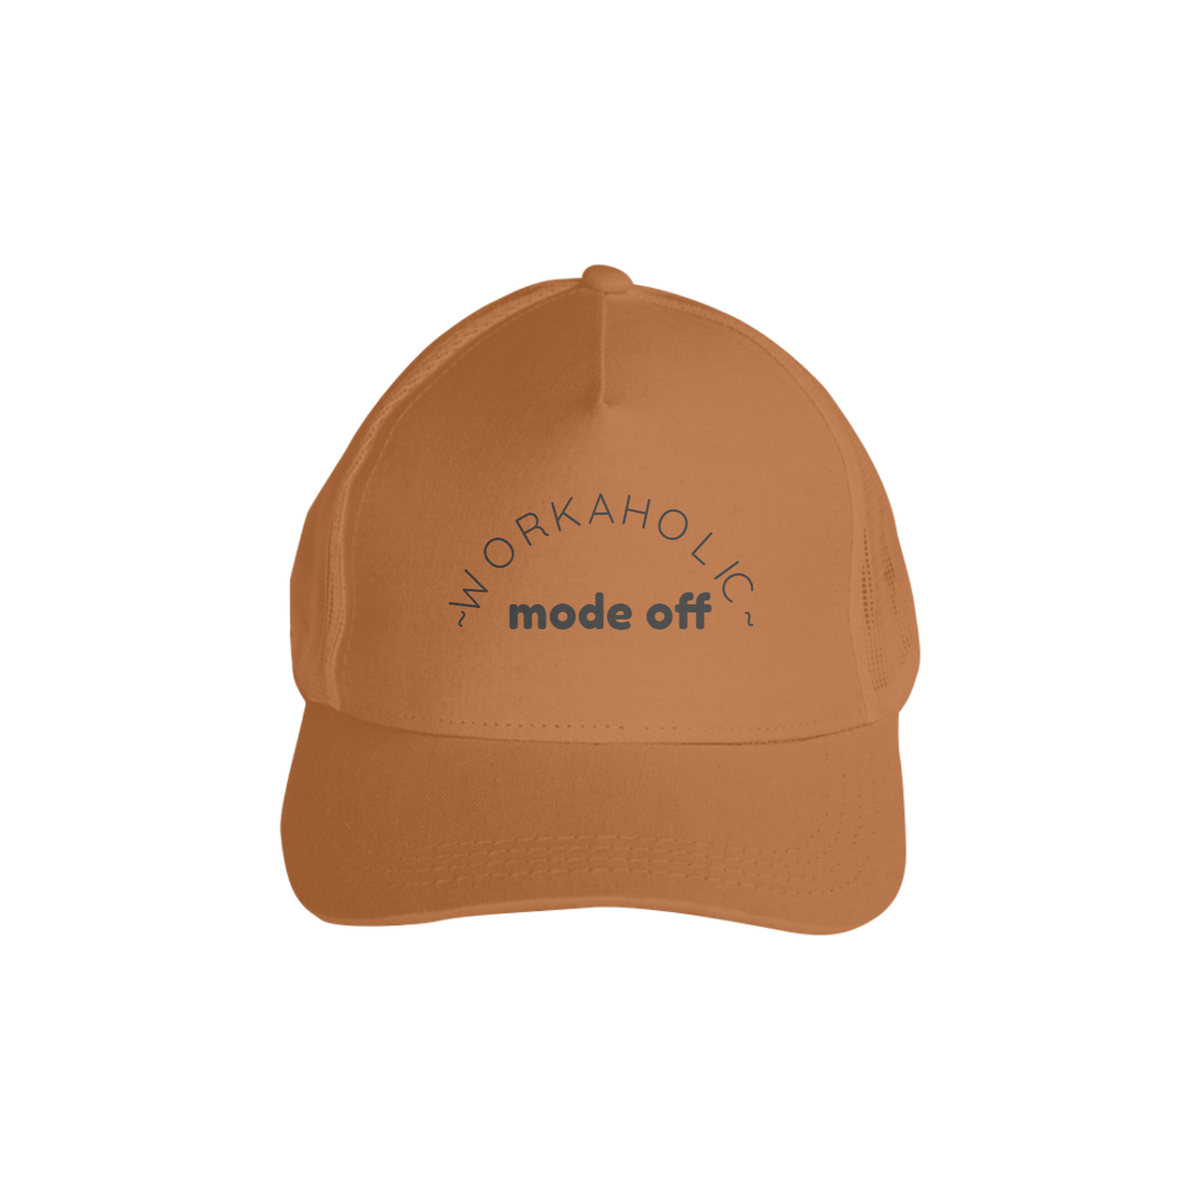 Nome do produto: Workaholic mode off